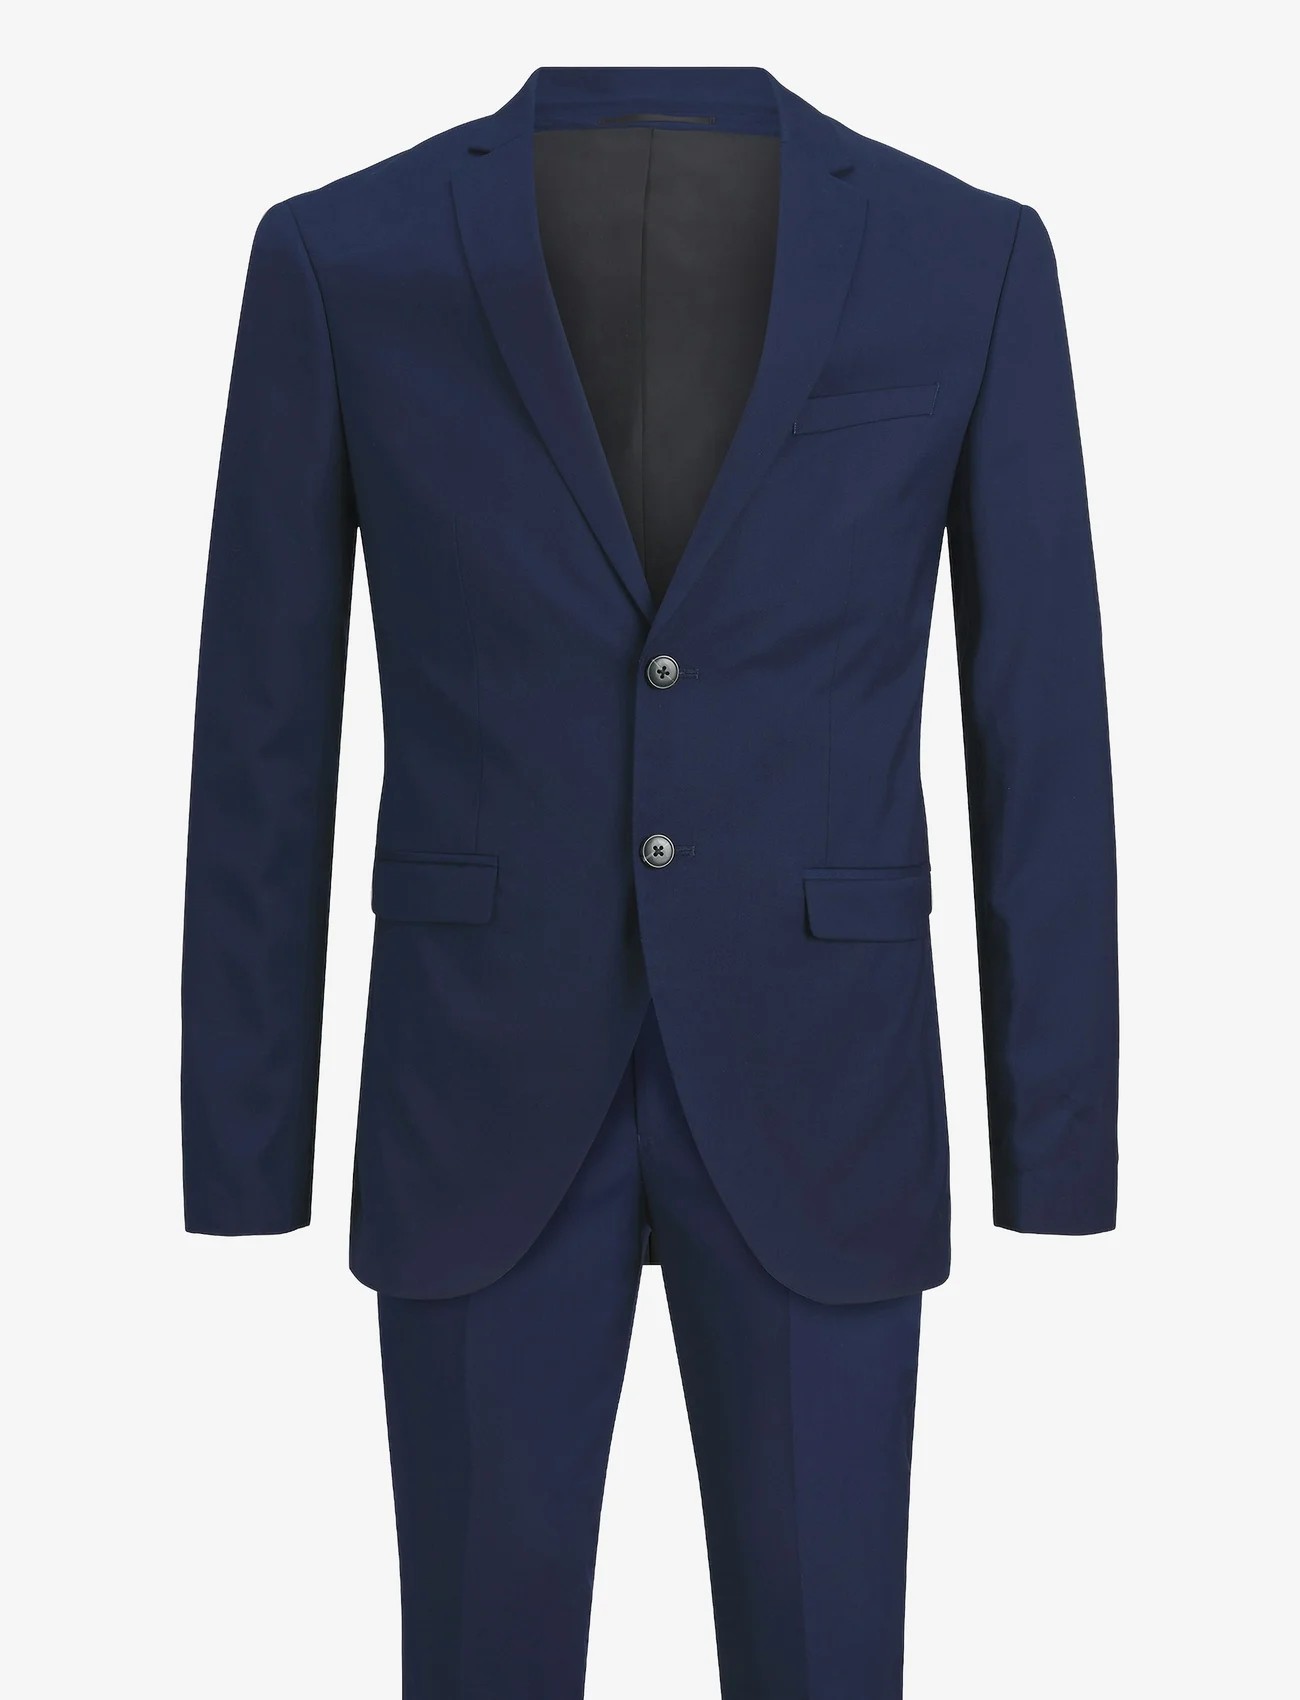 Jack & Jones - JPRFRANCO SUIT NOOS - double breasted suits - medieval blue - 1